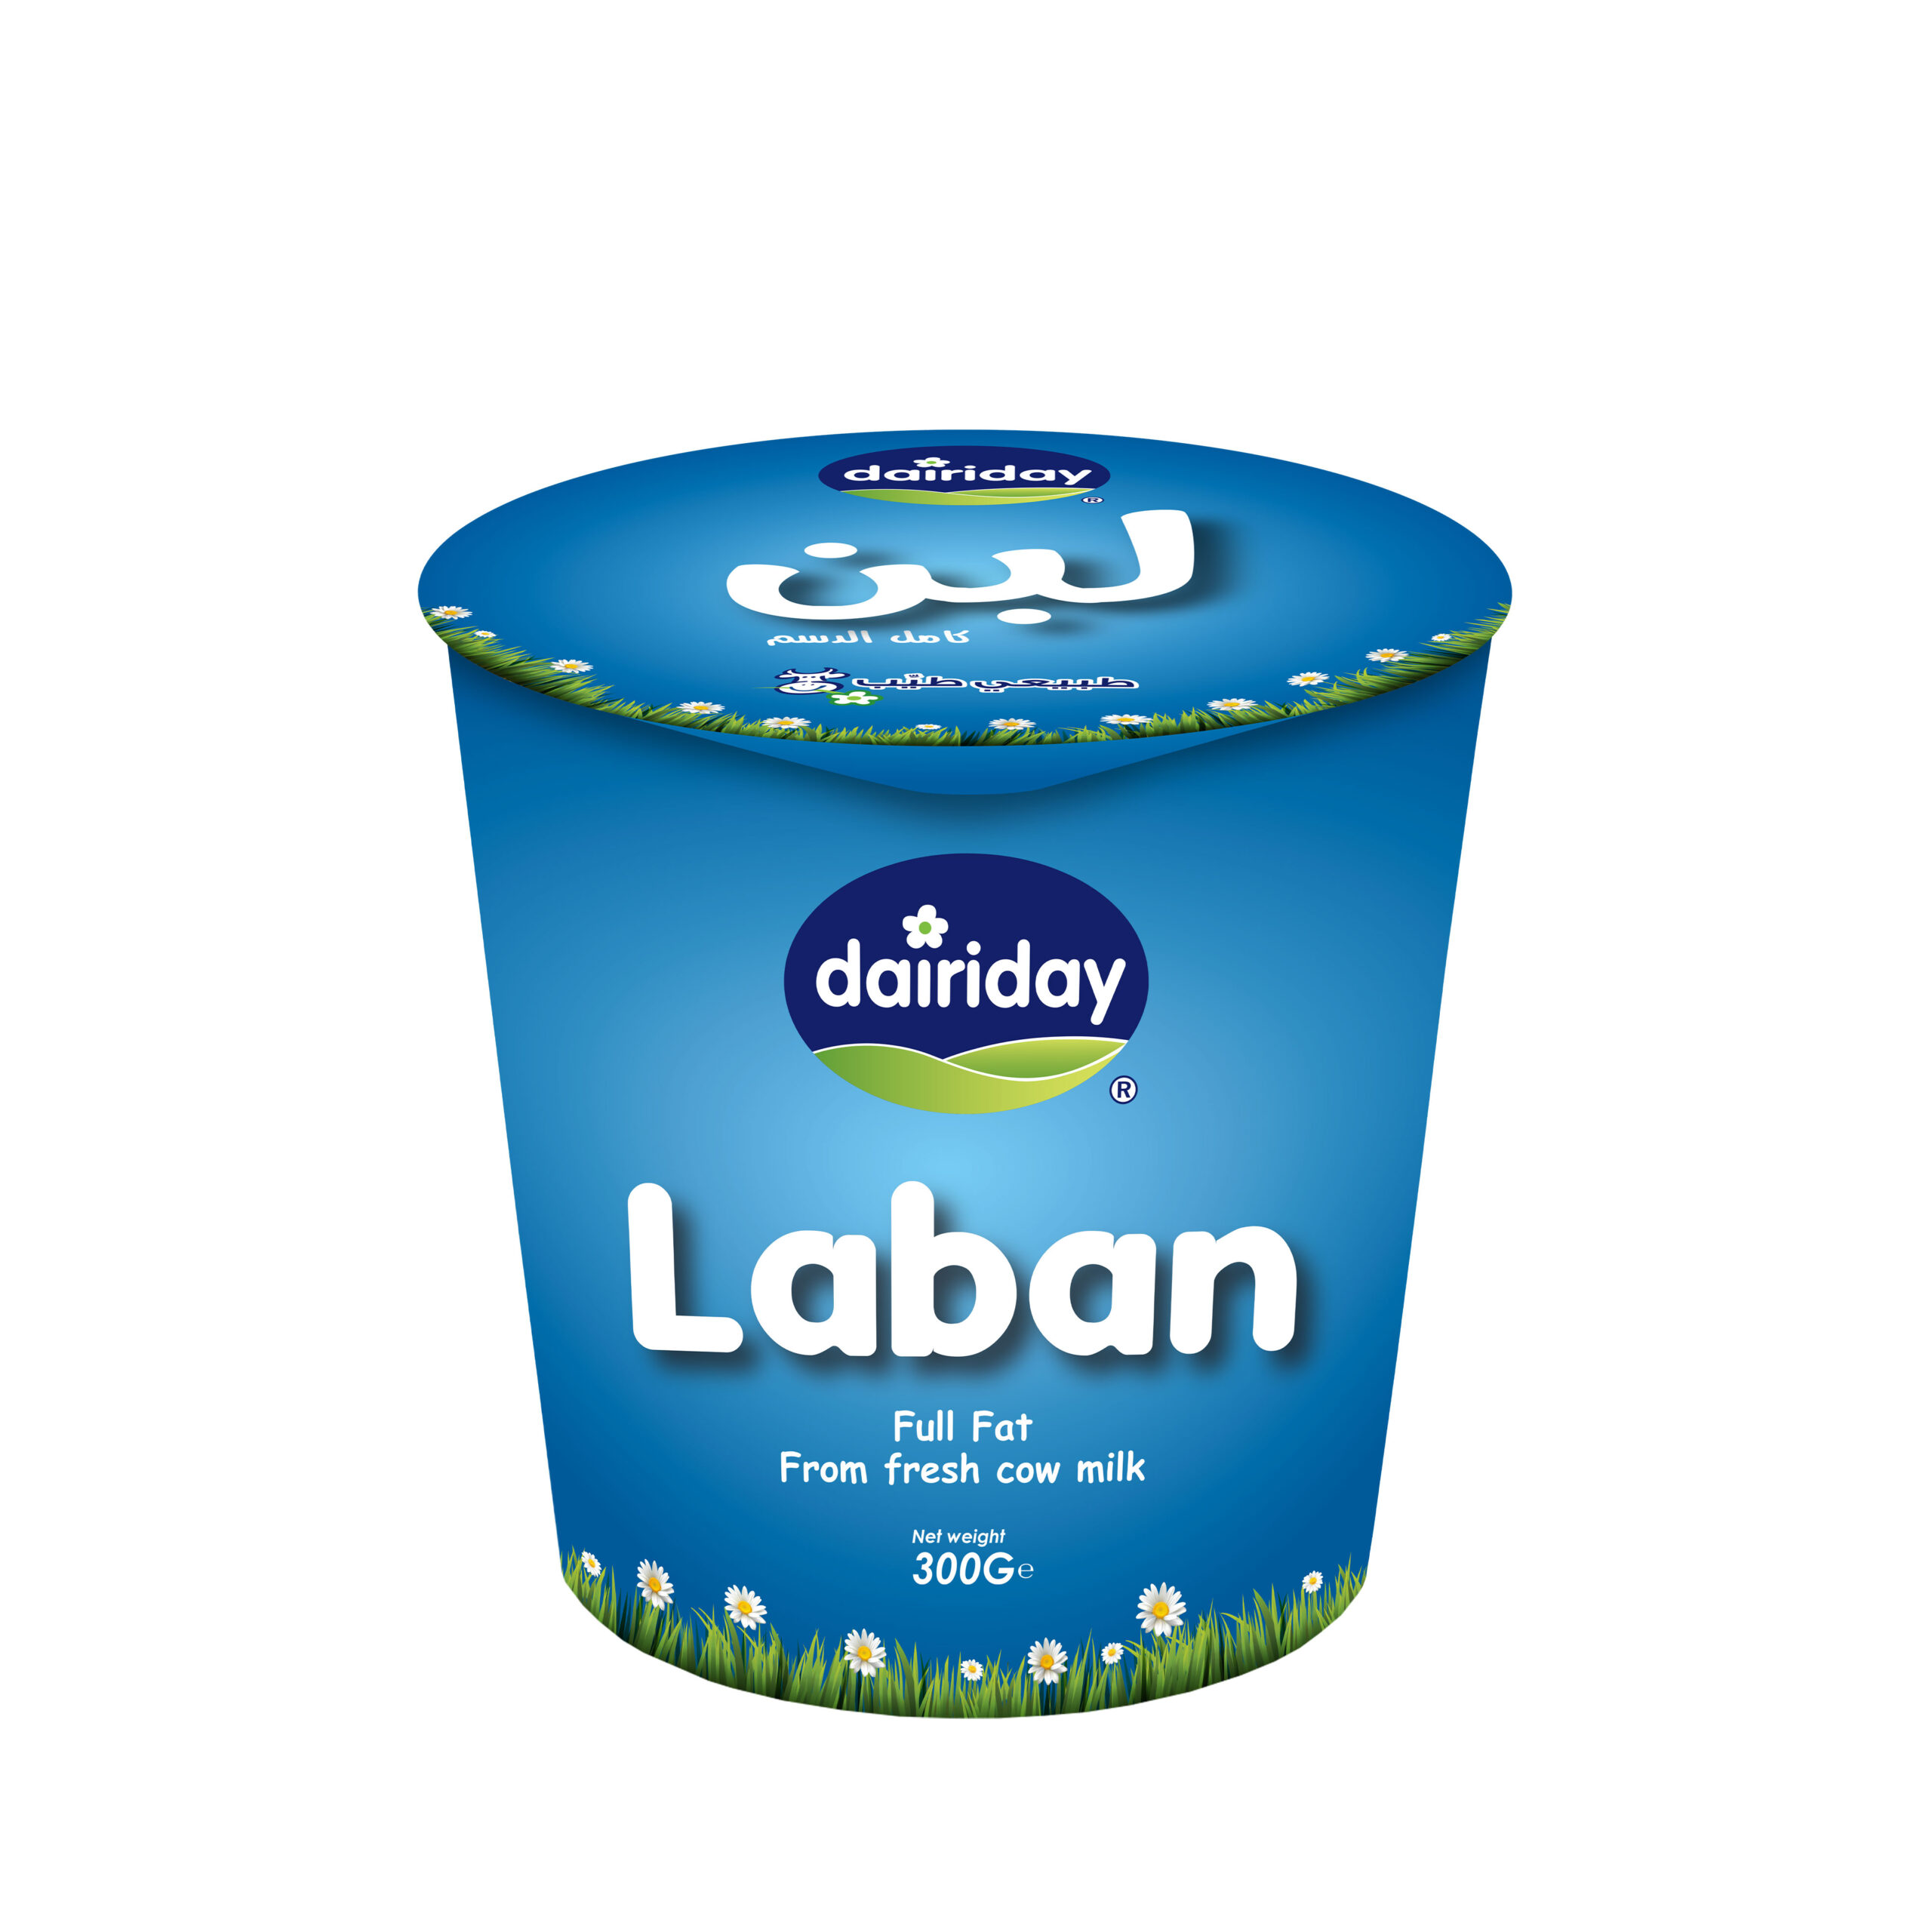 Dairiday-Laban-300g